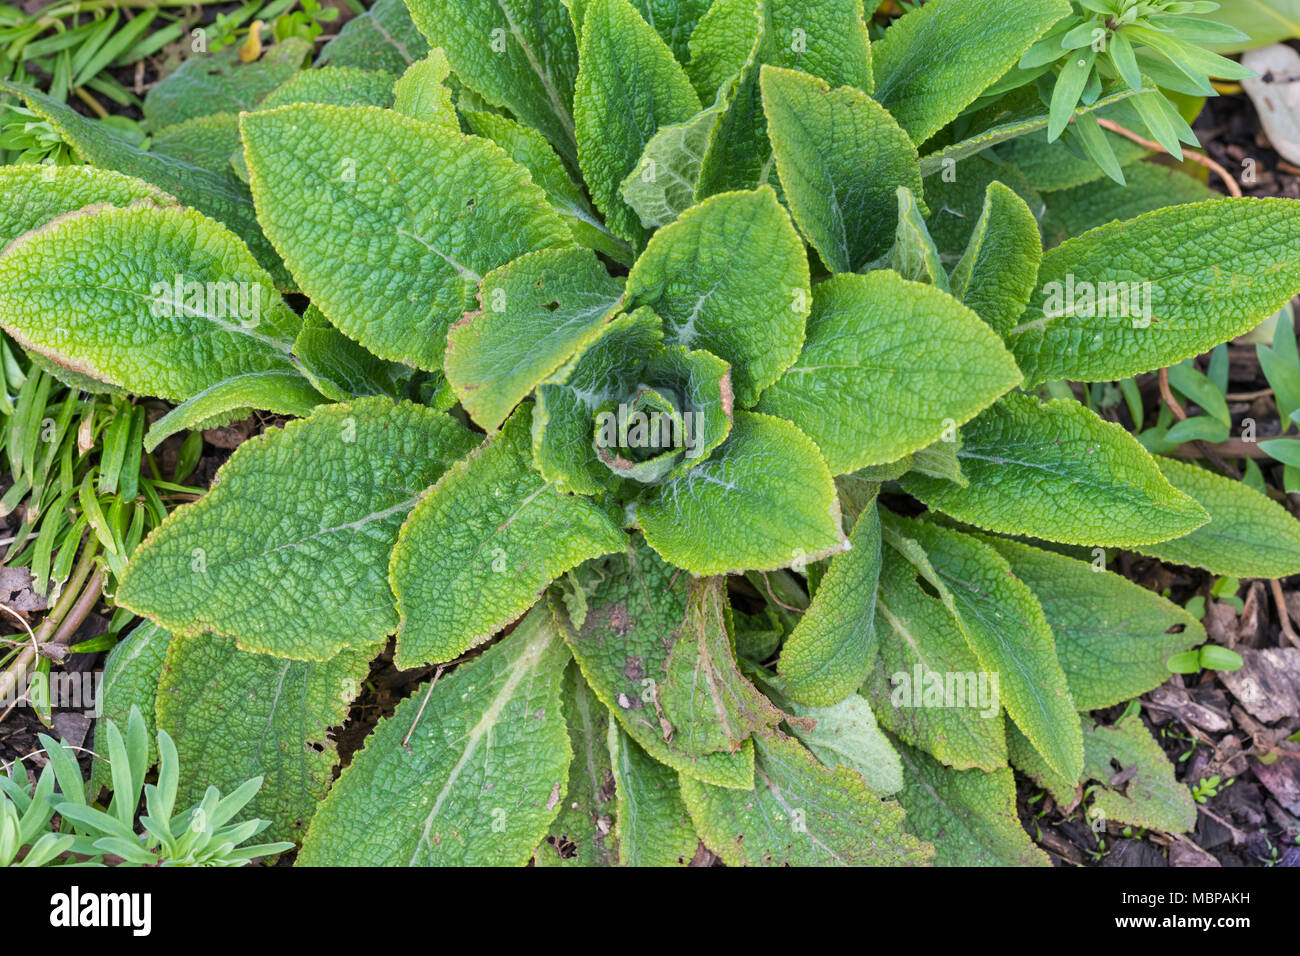 Top down Sicht der Blätter von der Digitalis purpurea (lila Fingerhut) Pflanze, die verwendet werden, um die Herzen der Droge Digitalis zu machen. Immer im Frühjahr, UK. Stockfoto